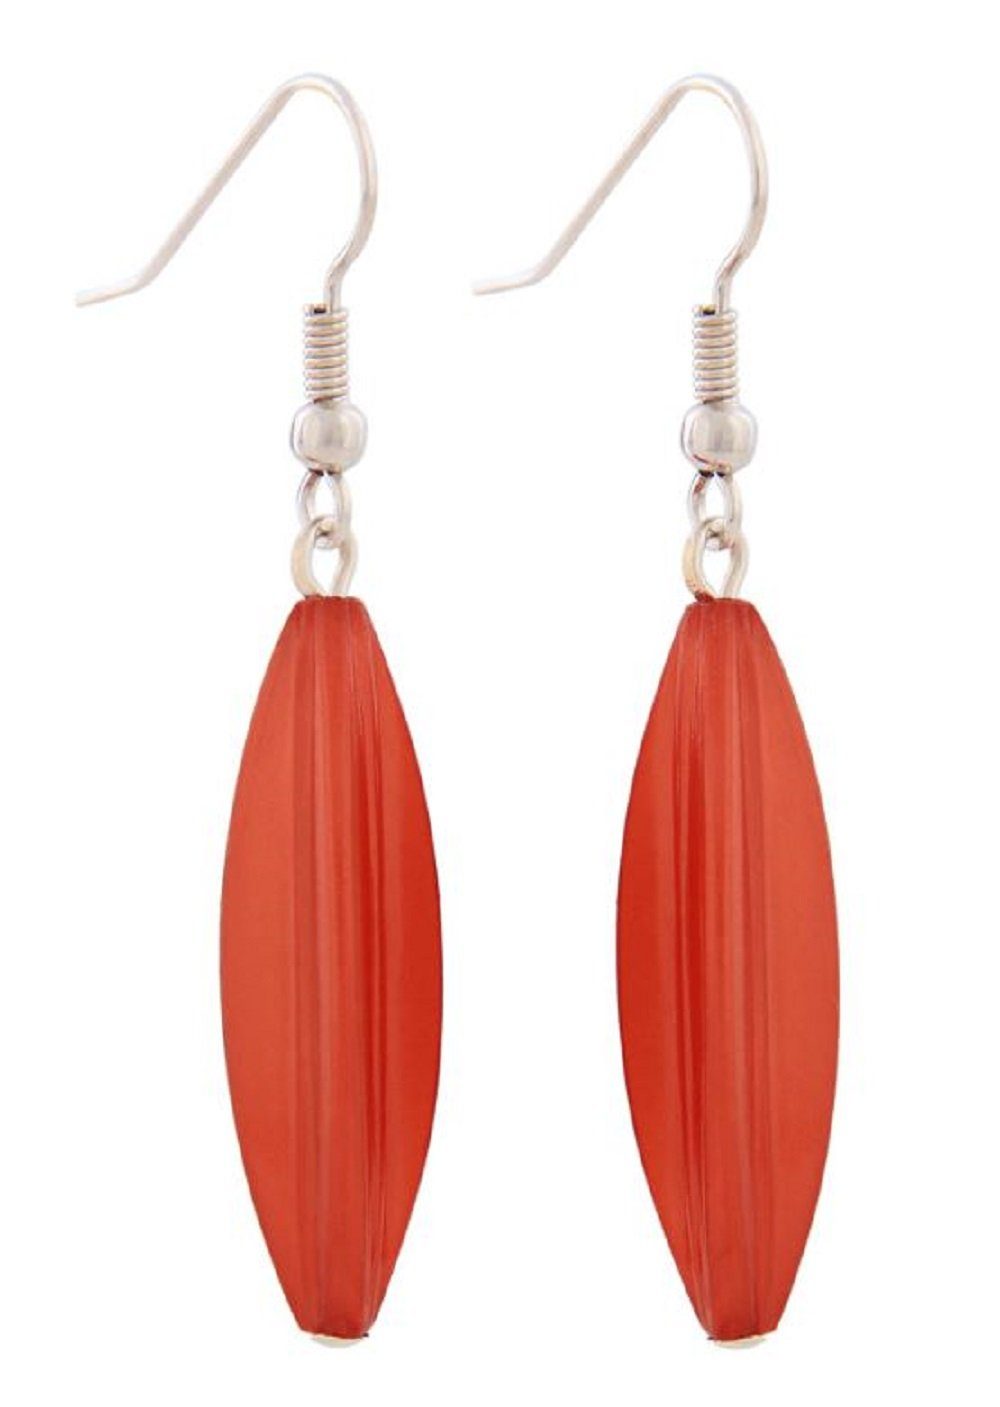 unbespielt Paar Ohrhänger Ohrhaken Rillenolive Kunststoff rotbraun-wachsfarben 30 x 9 mm, Modeschmuck für Damen